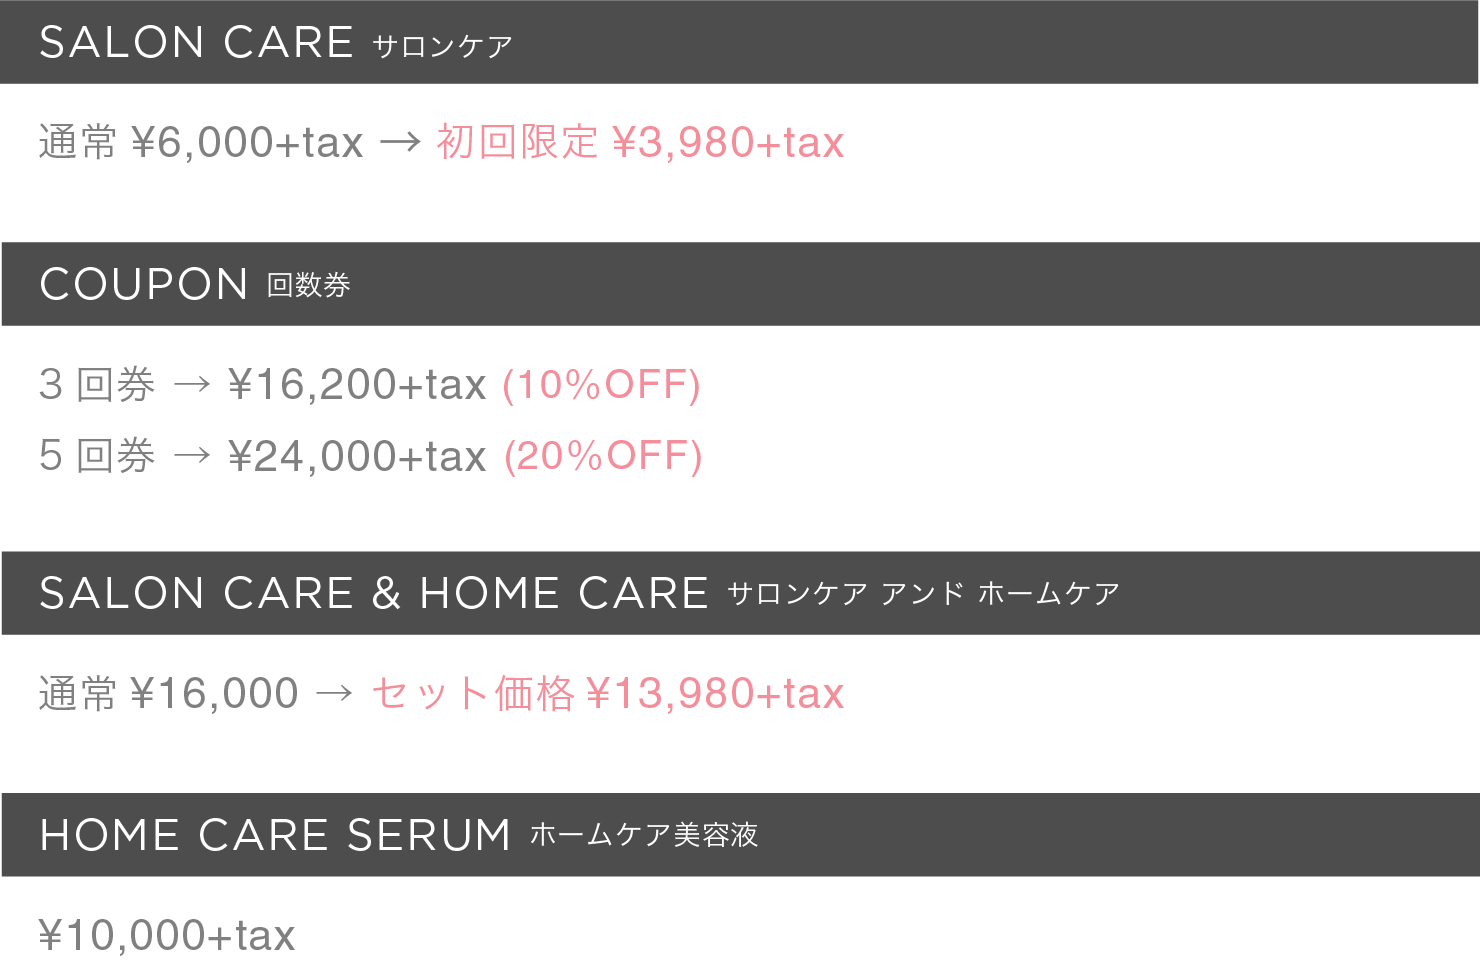 サロンケア 通常¥6,000+tax→初回限定¥3,980+tax etc.